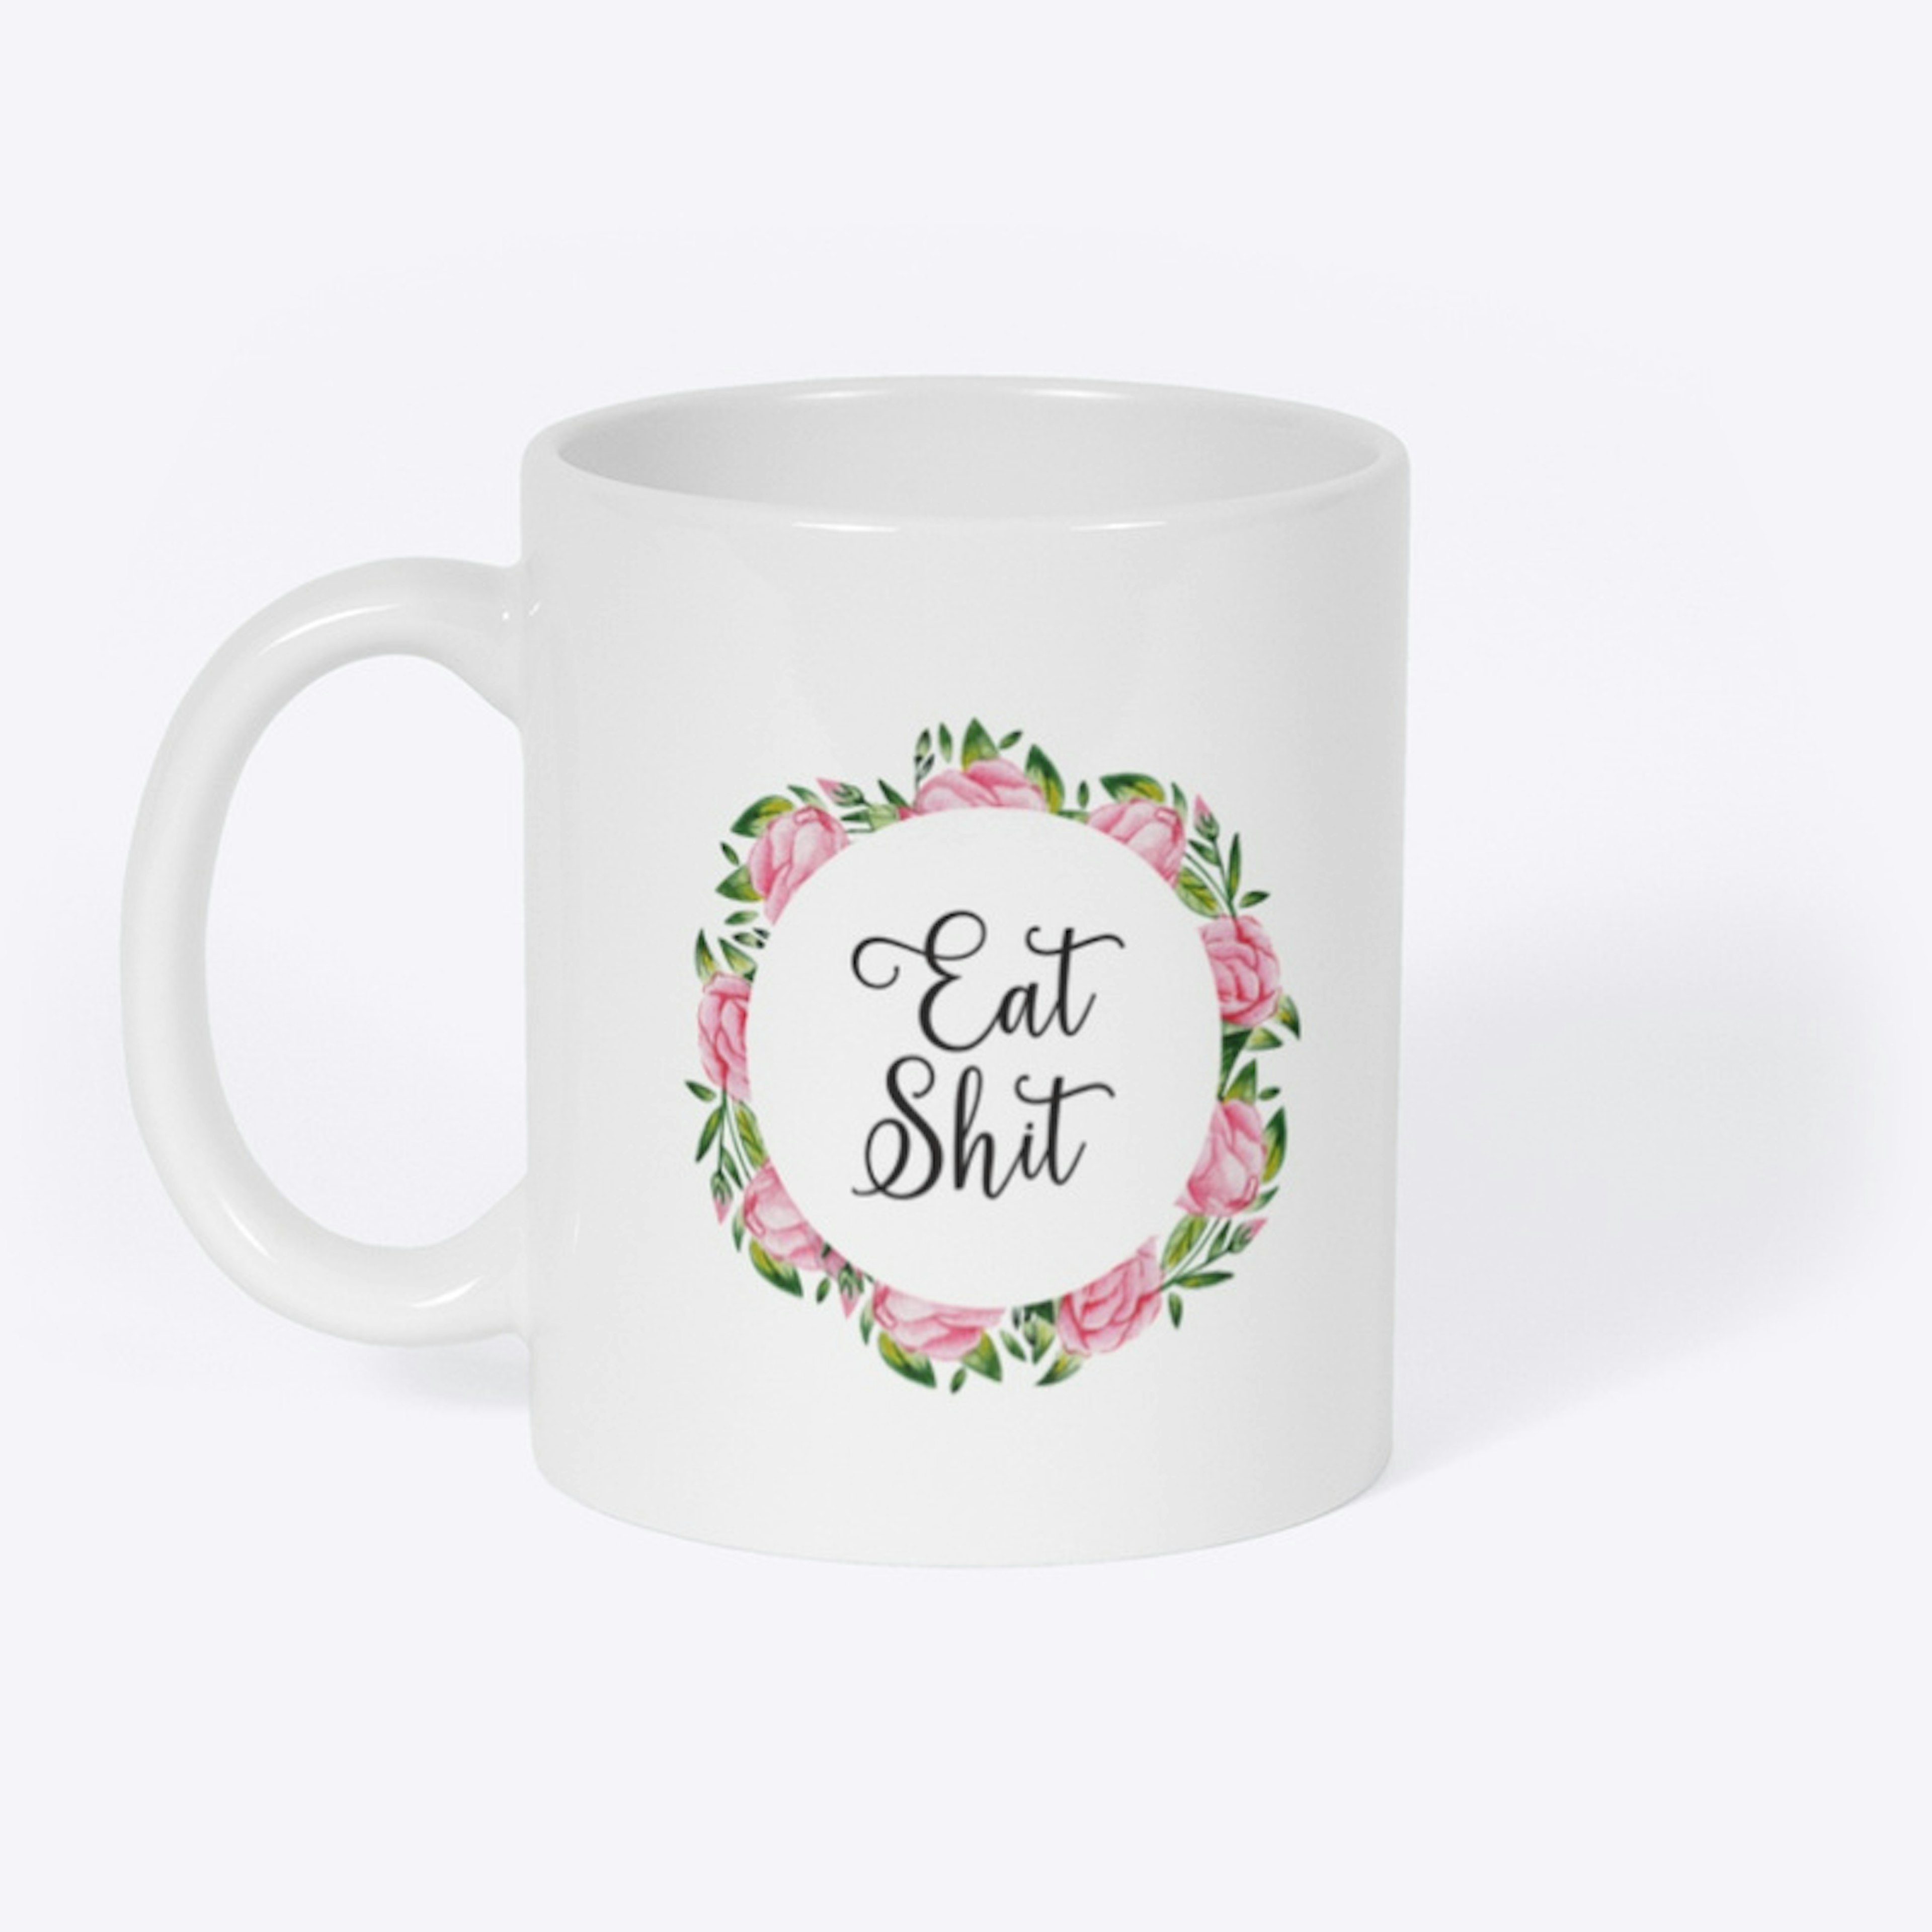 Eat What? Mug